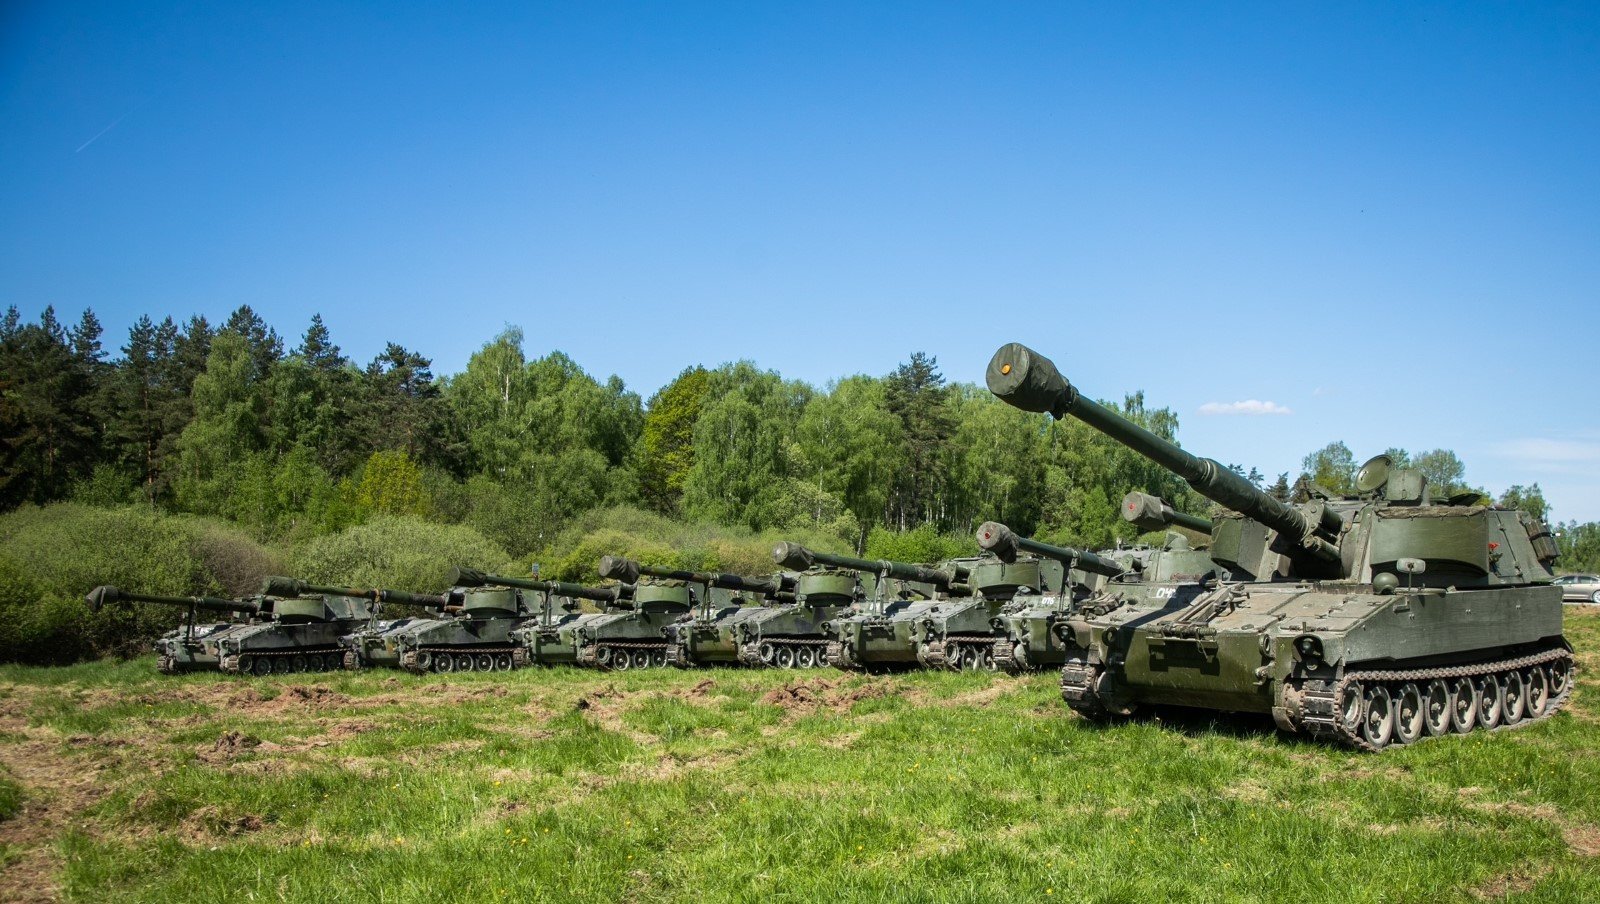 Norwegen hat der Ukraine 22 M109-Selbstfahrlafetten übergeben, die bis zu 30 km weit schießen können